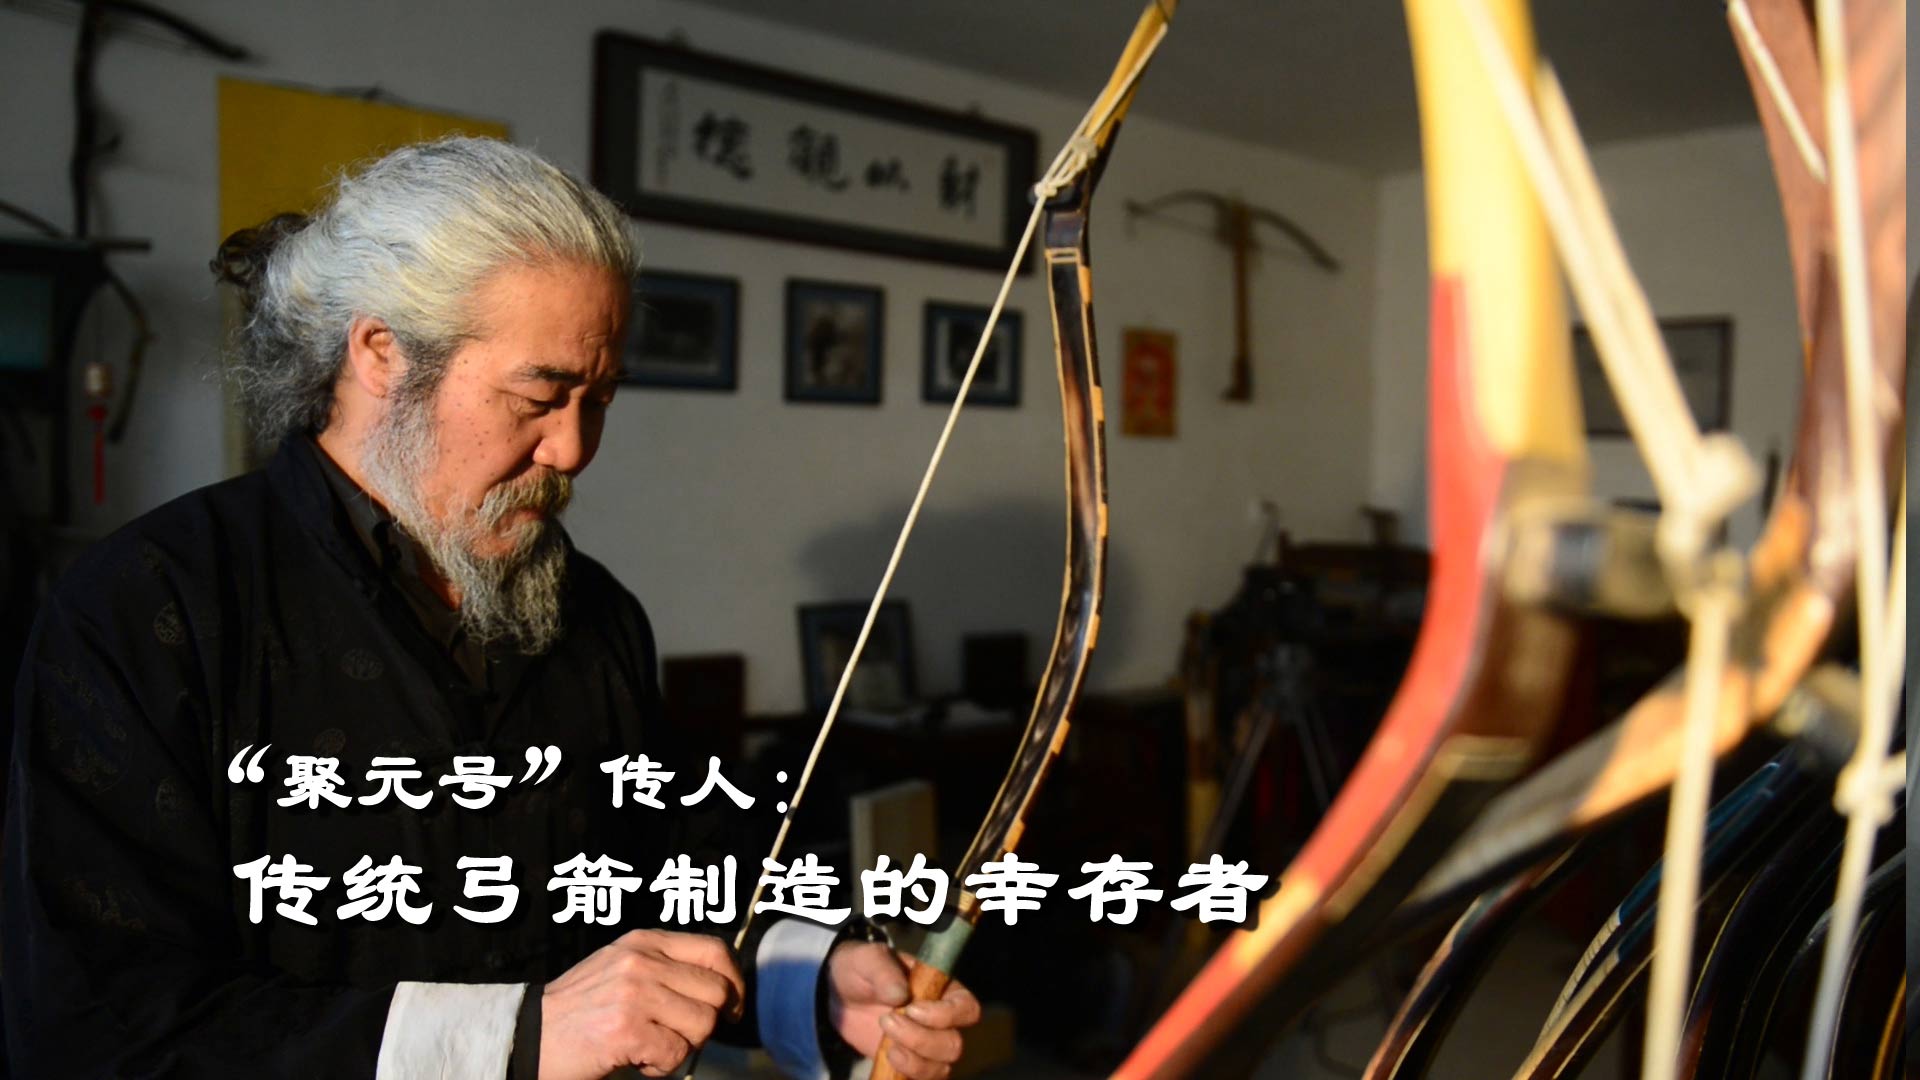 “聚元號”——傳統弓箭制造的幸存者